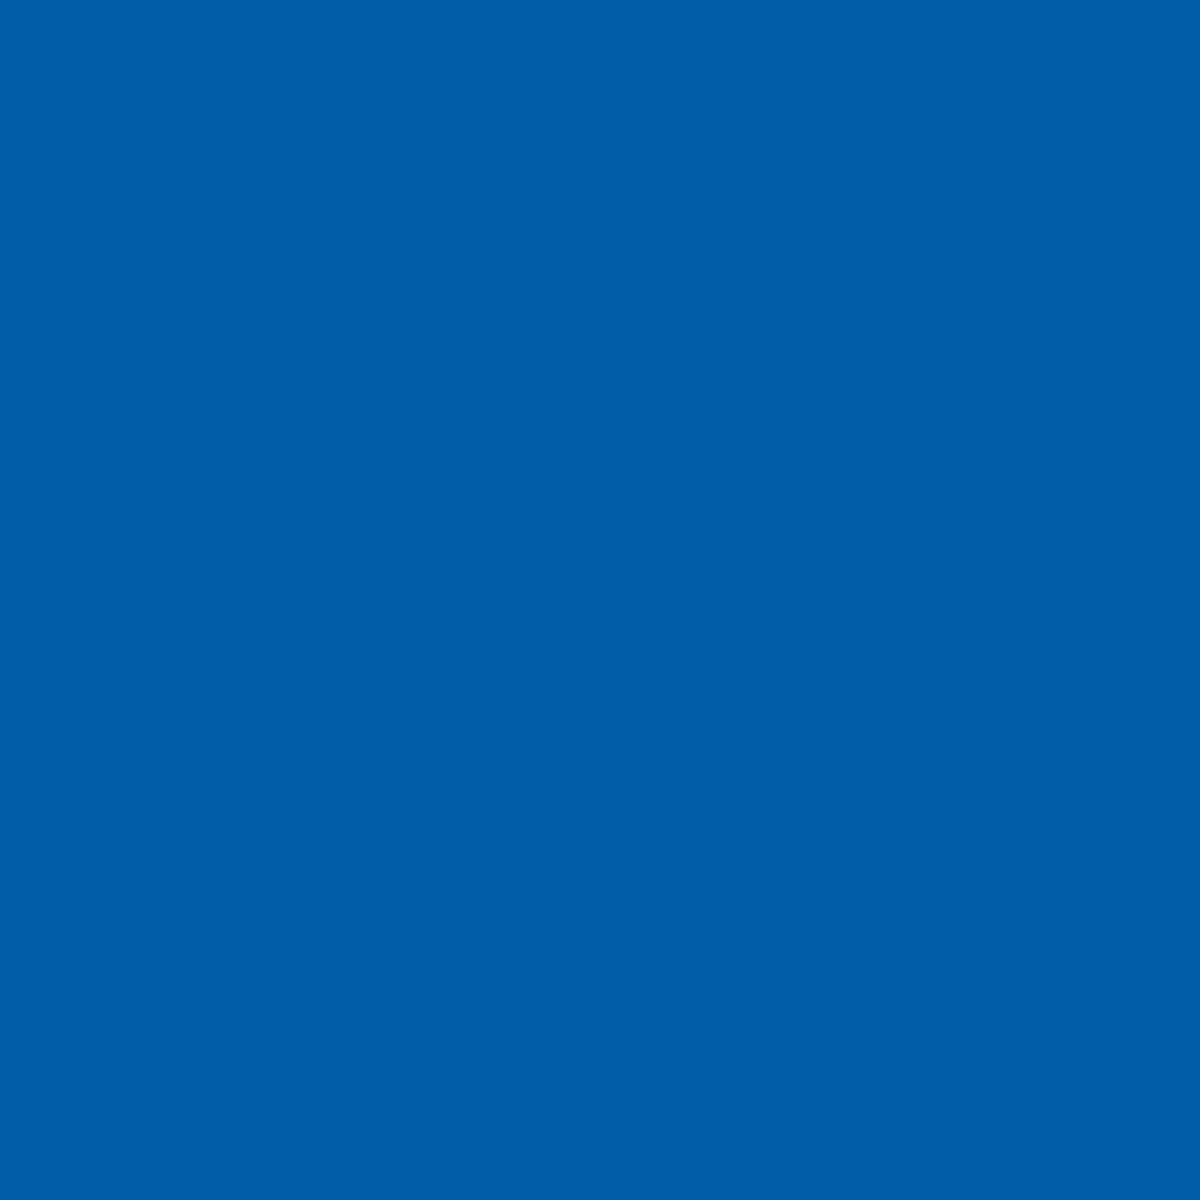 3M Envision transparante kleurenfolie 3730-127L intens blauw 1,22m x 45,7m